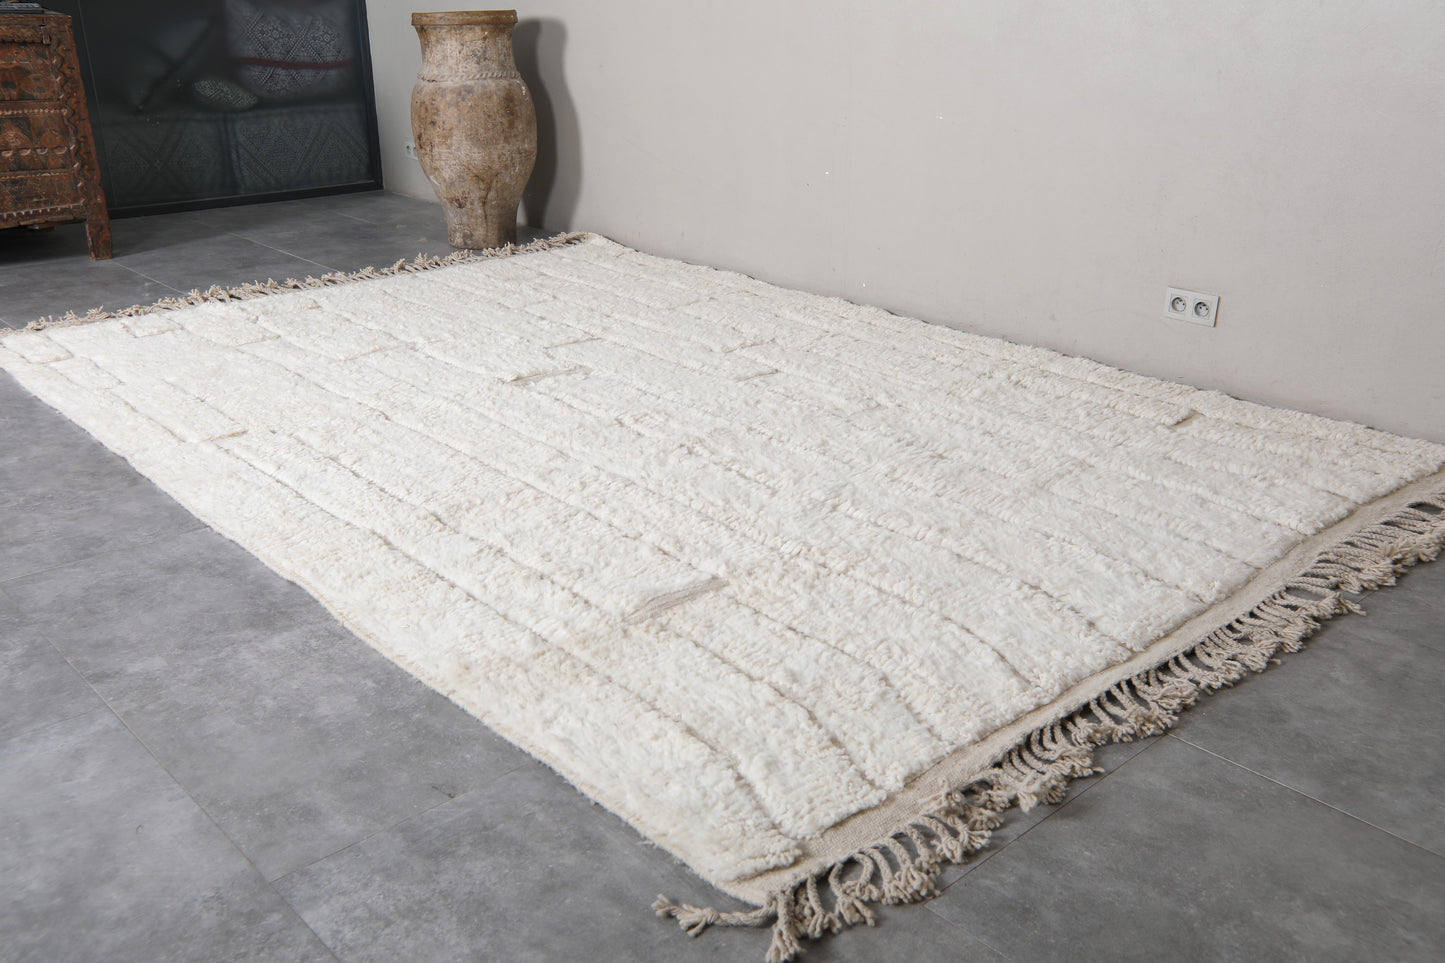 Moroccan berber rug 8 X 11.6 Feet - Beni ourain rugs